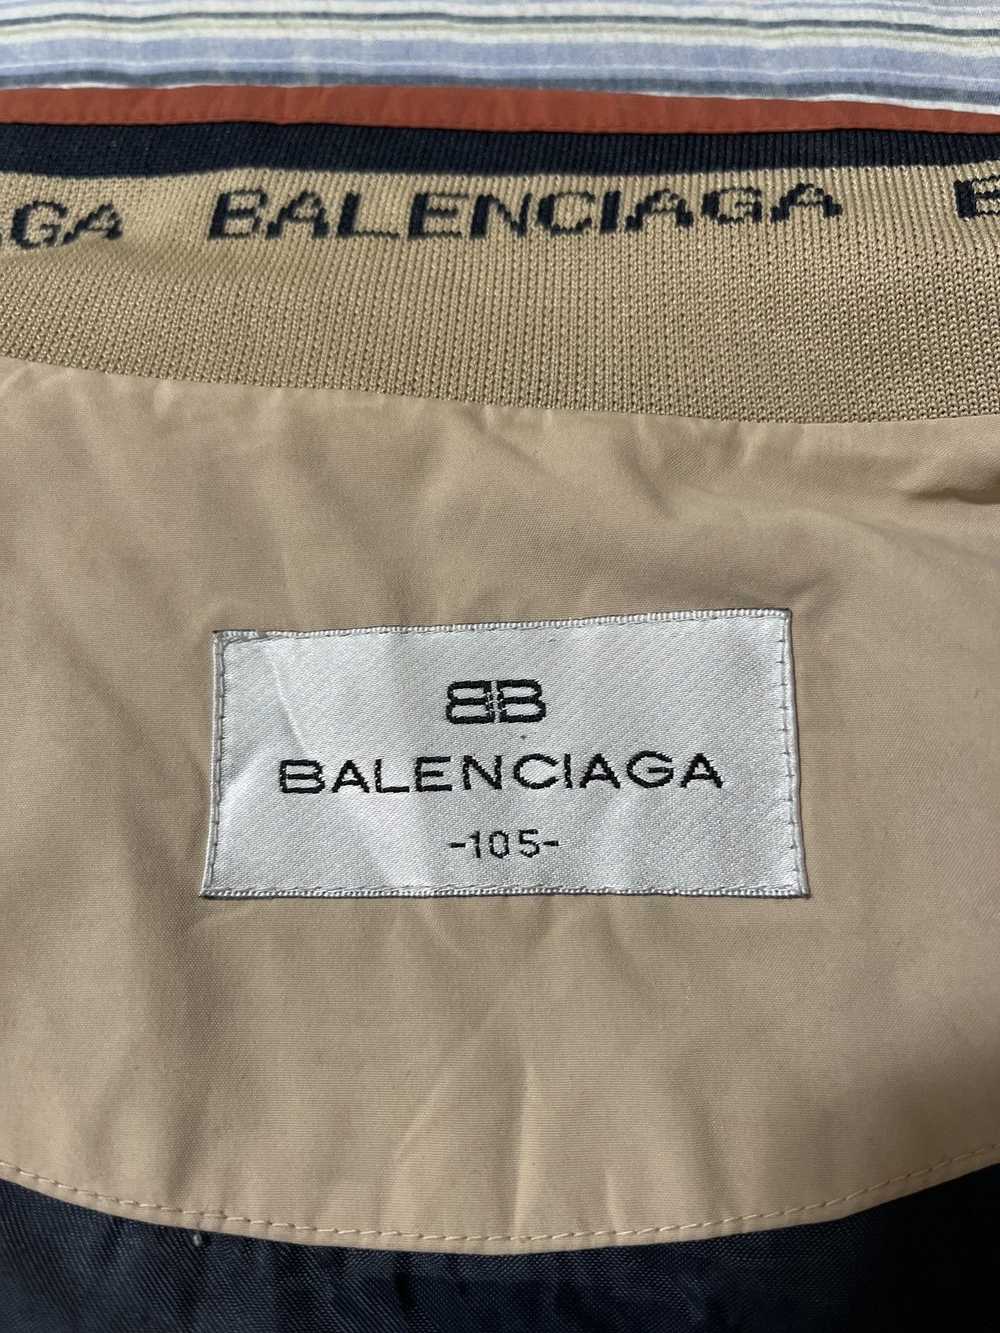 Balenciaga Balenciaga Bomber Jacket 2001 - image 4